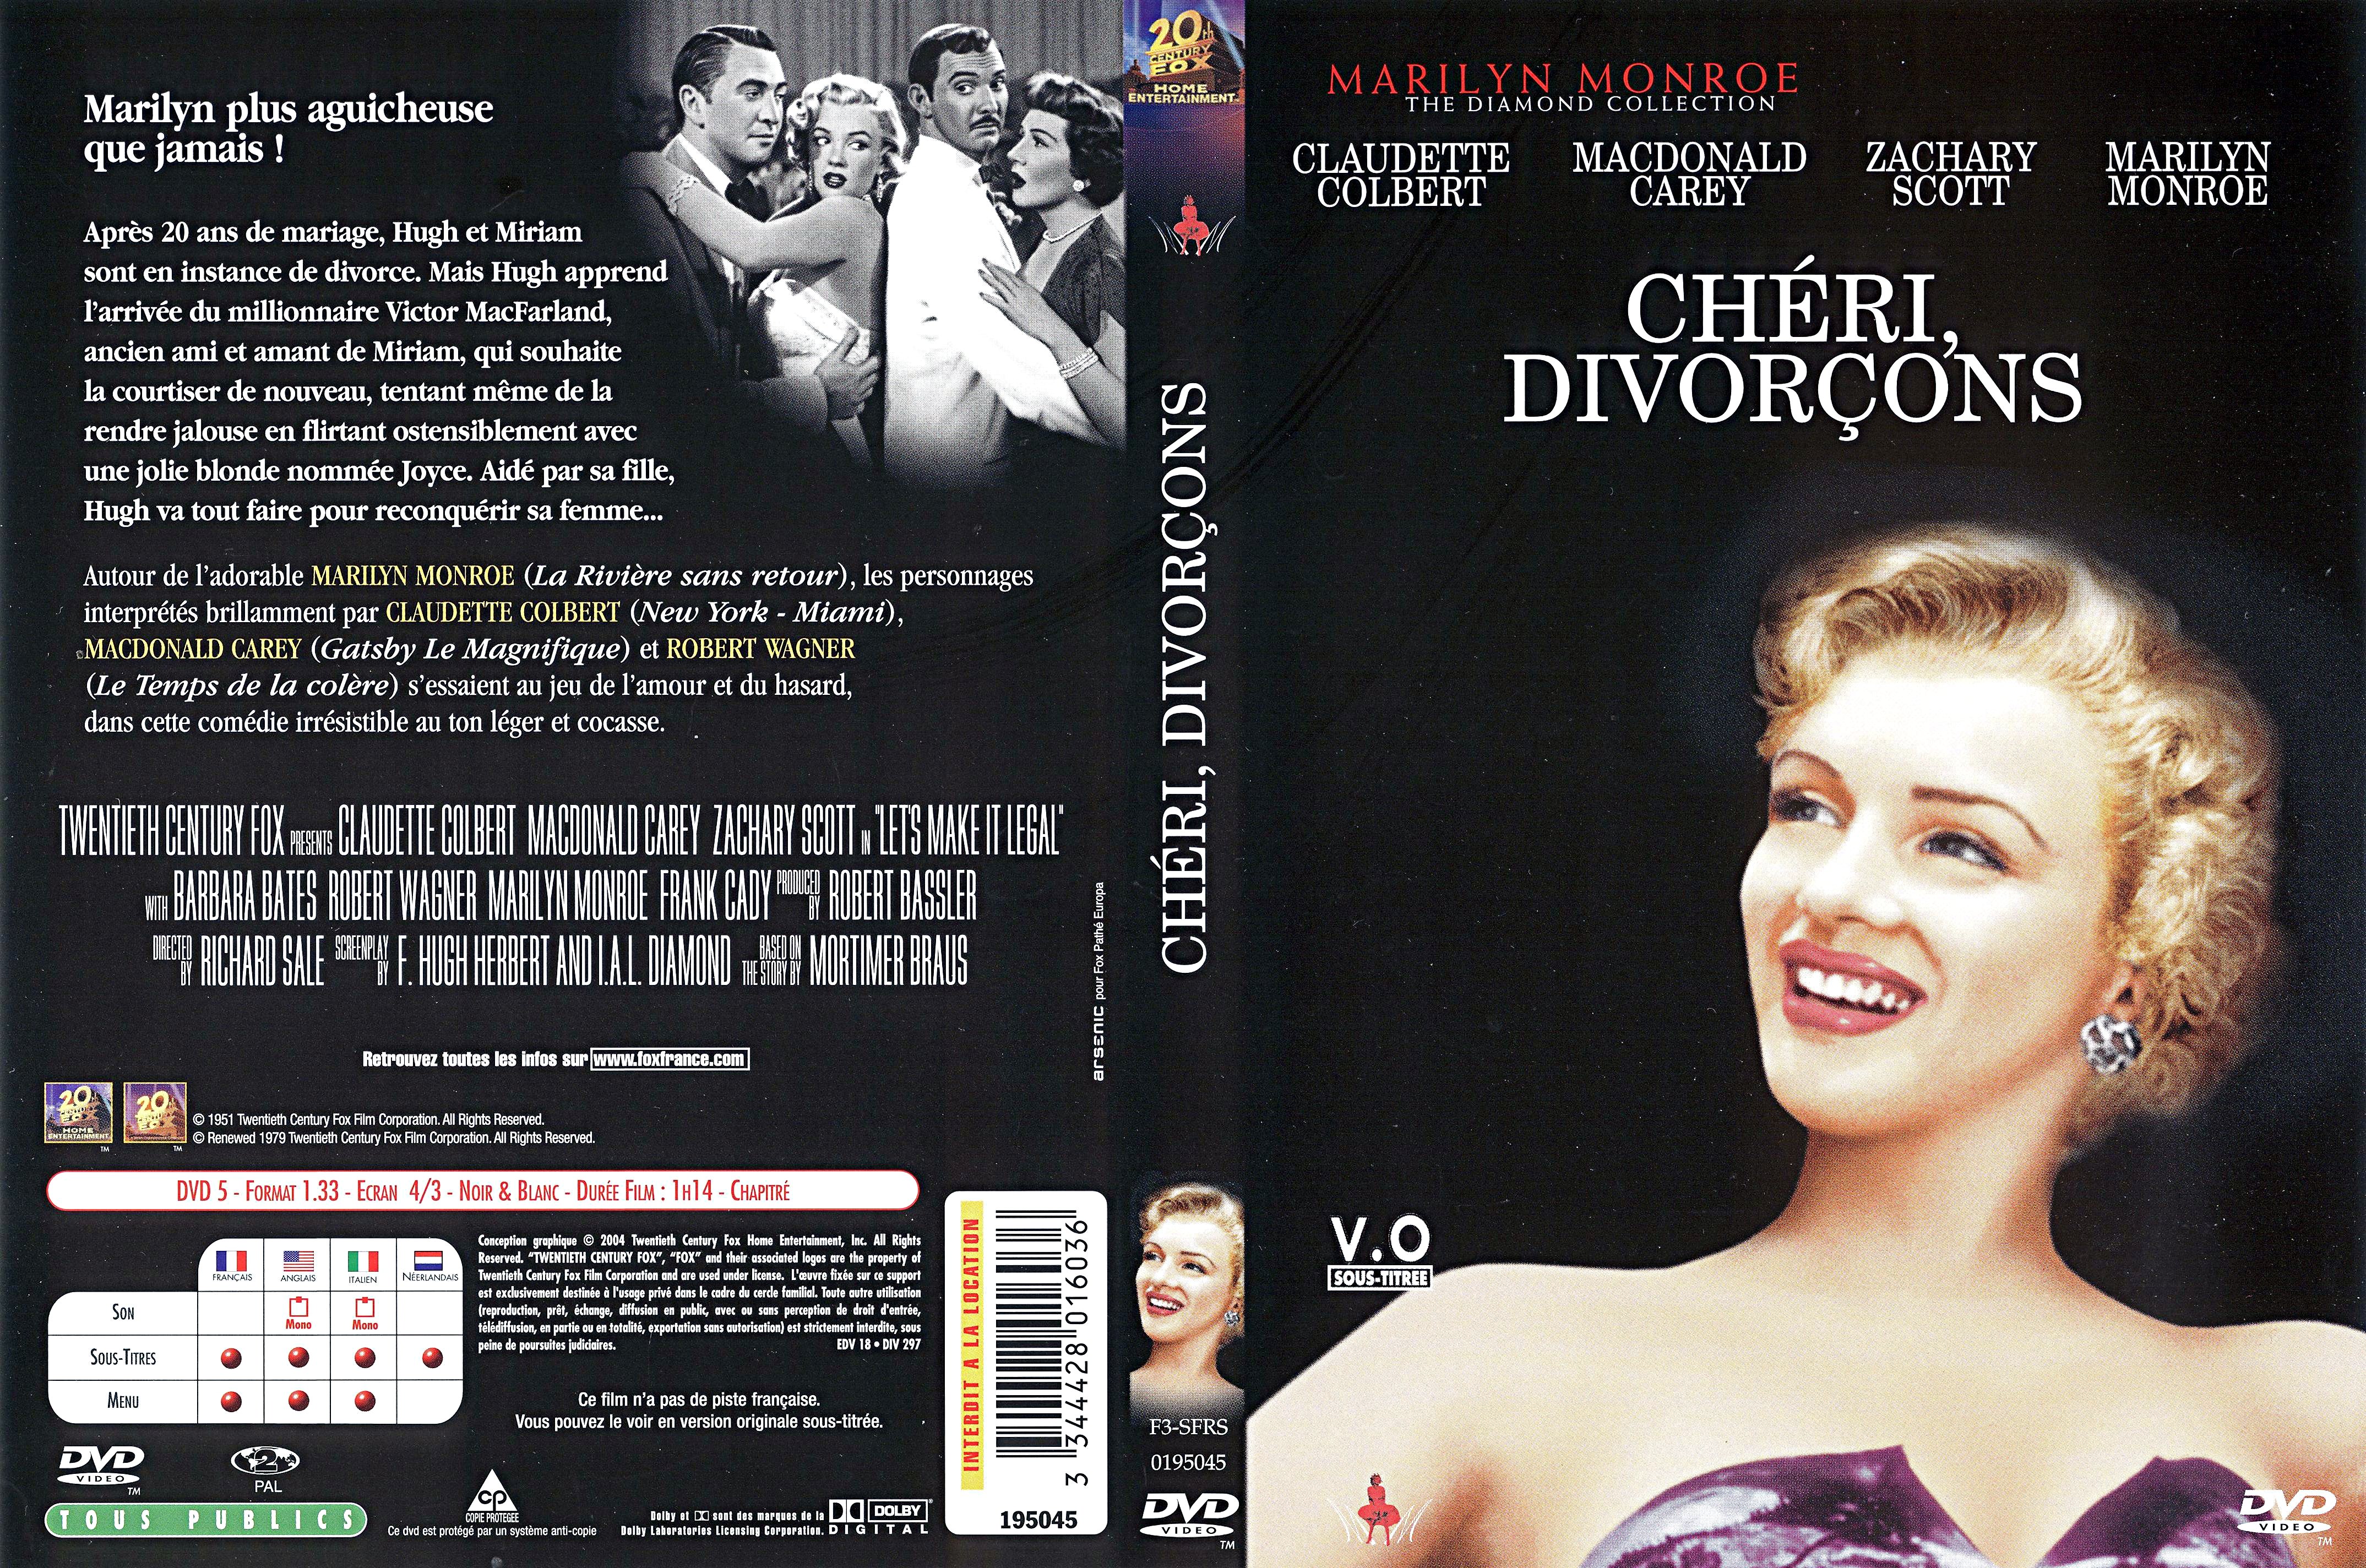 Jaquette DVD Chri, divorcons